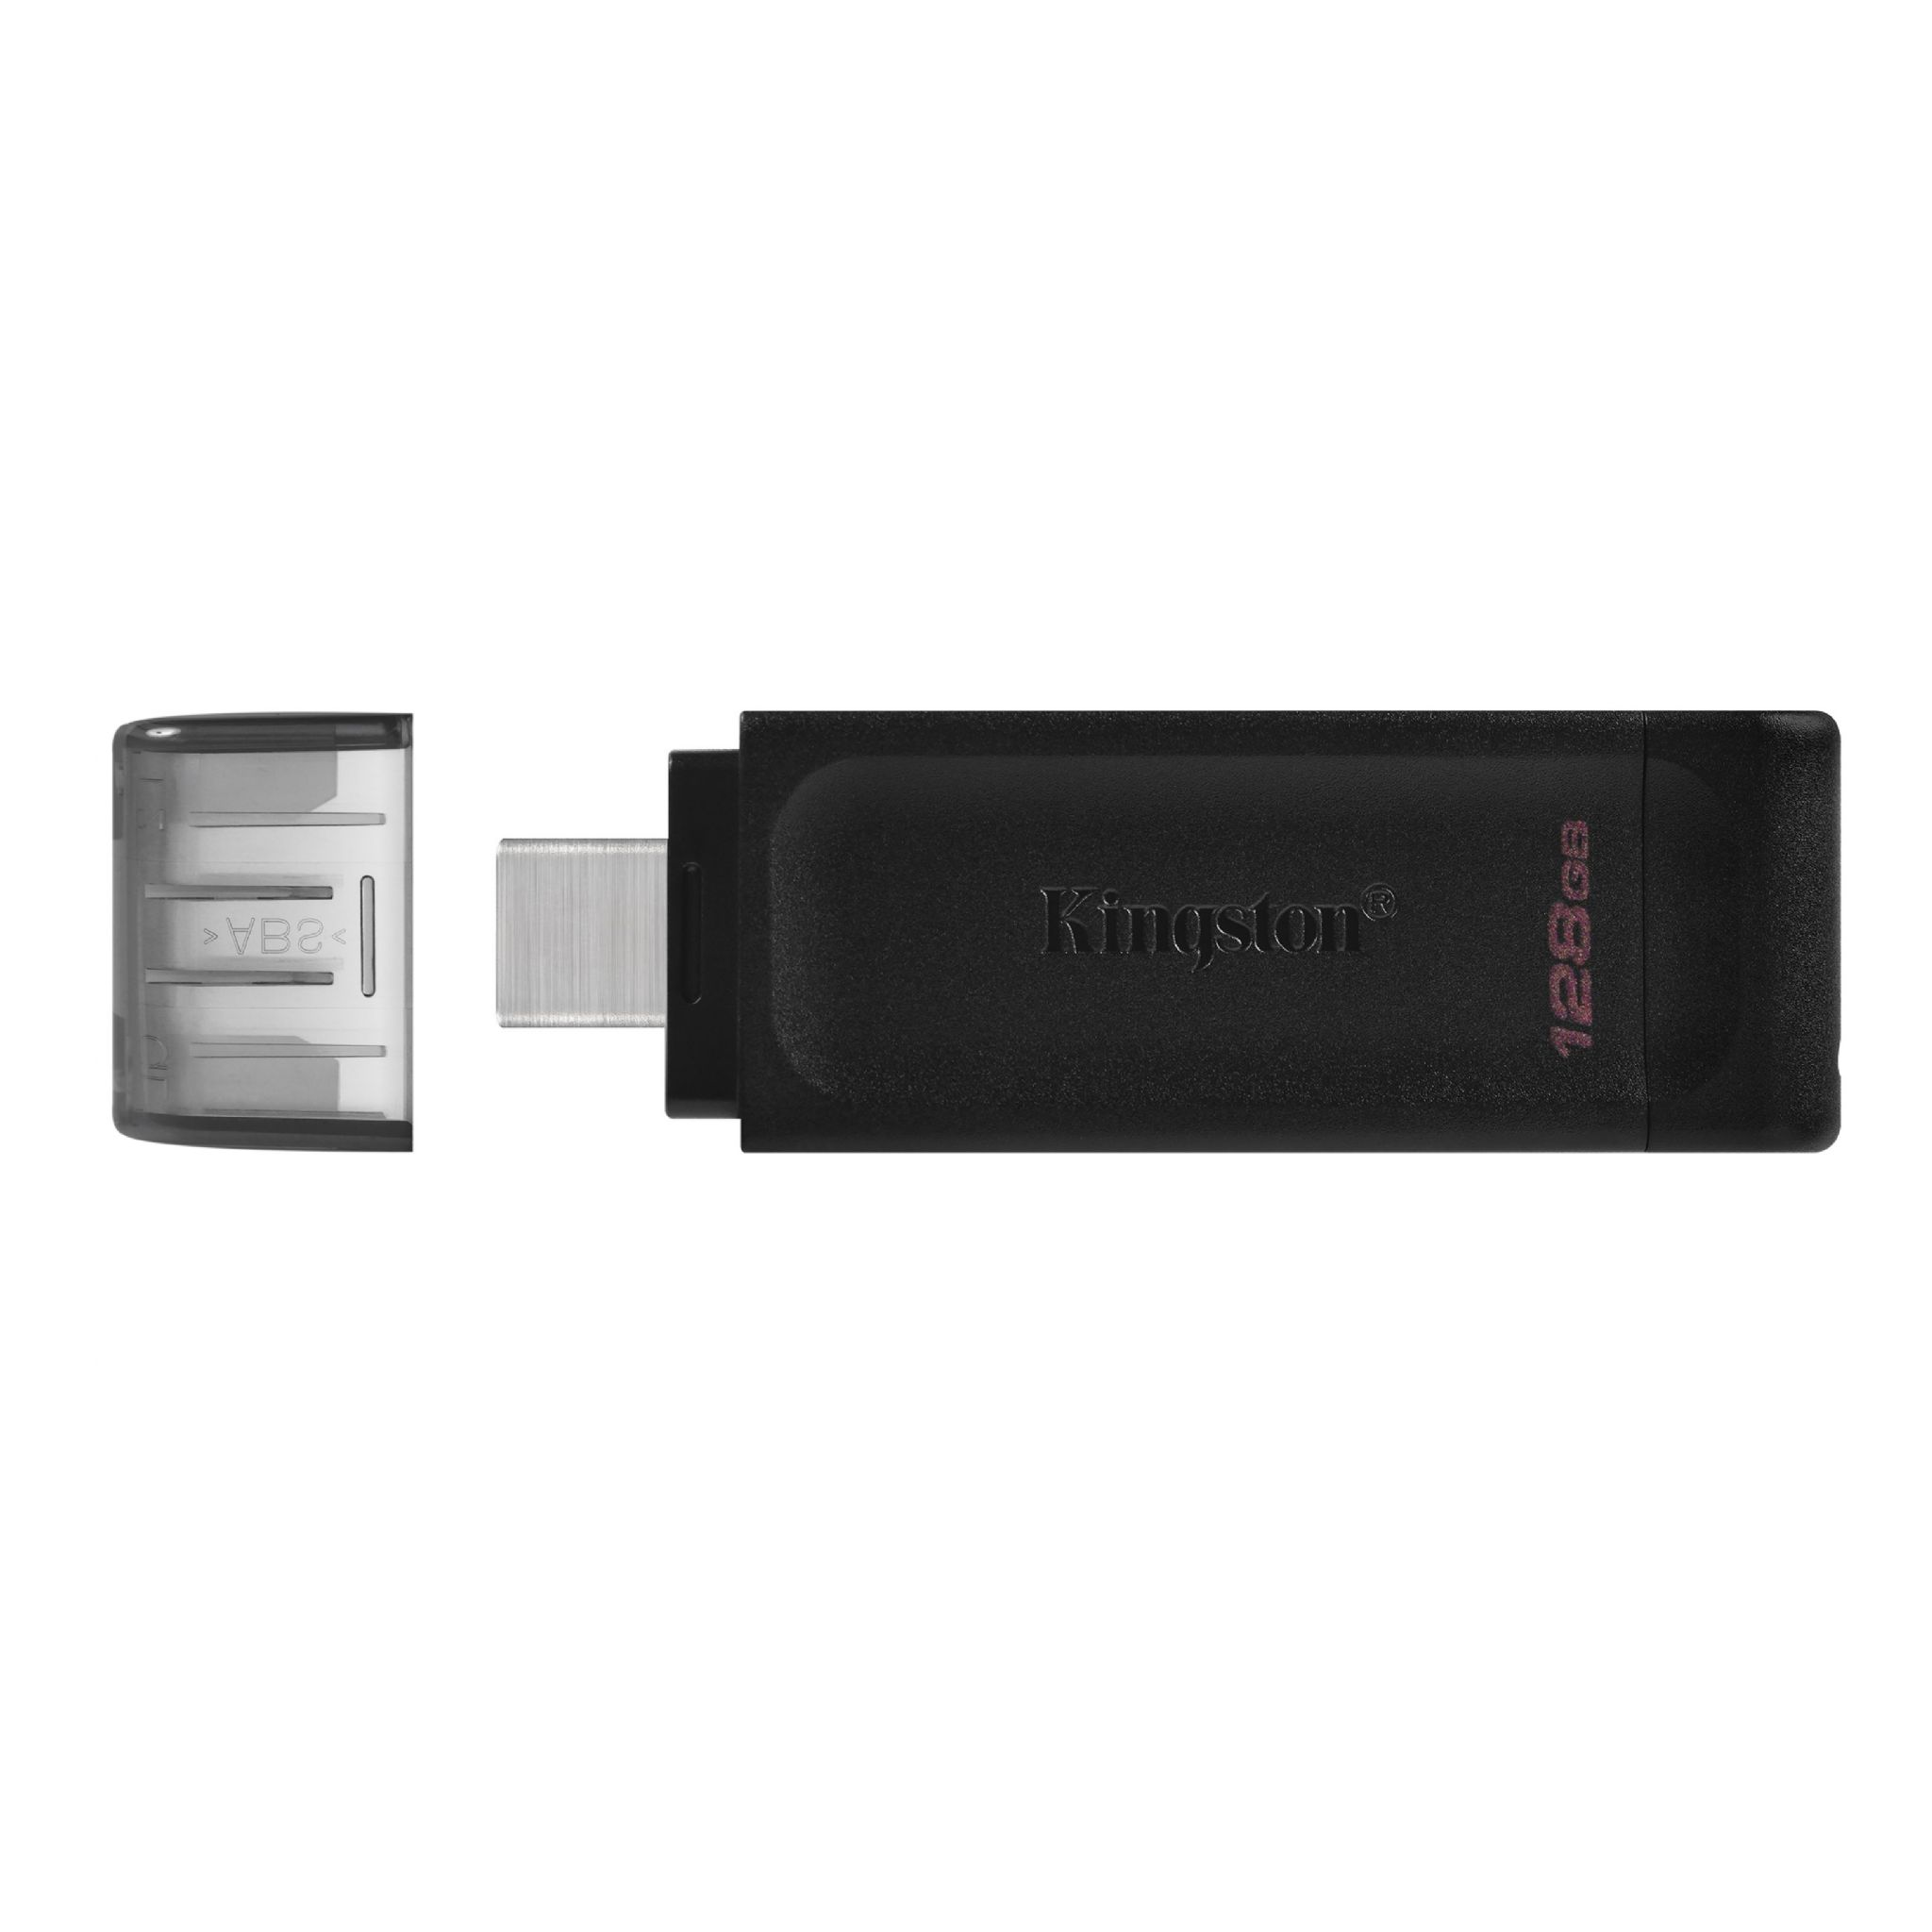 KINGSTON Stick DT70/128GB (schwarz, USB 128 GB)